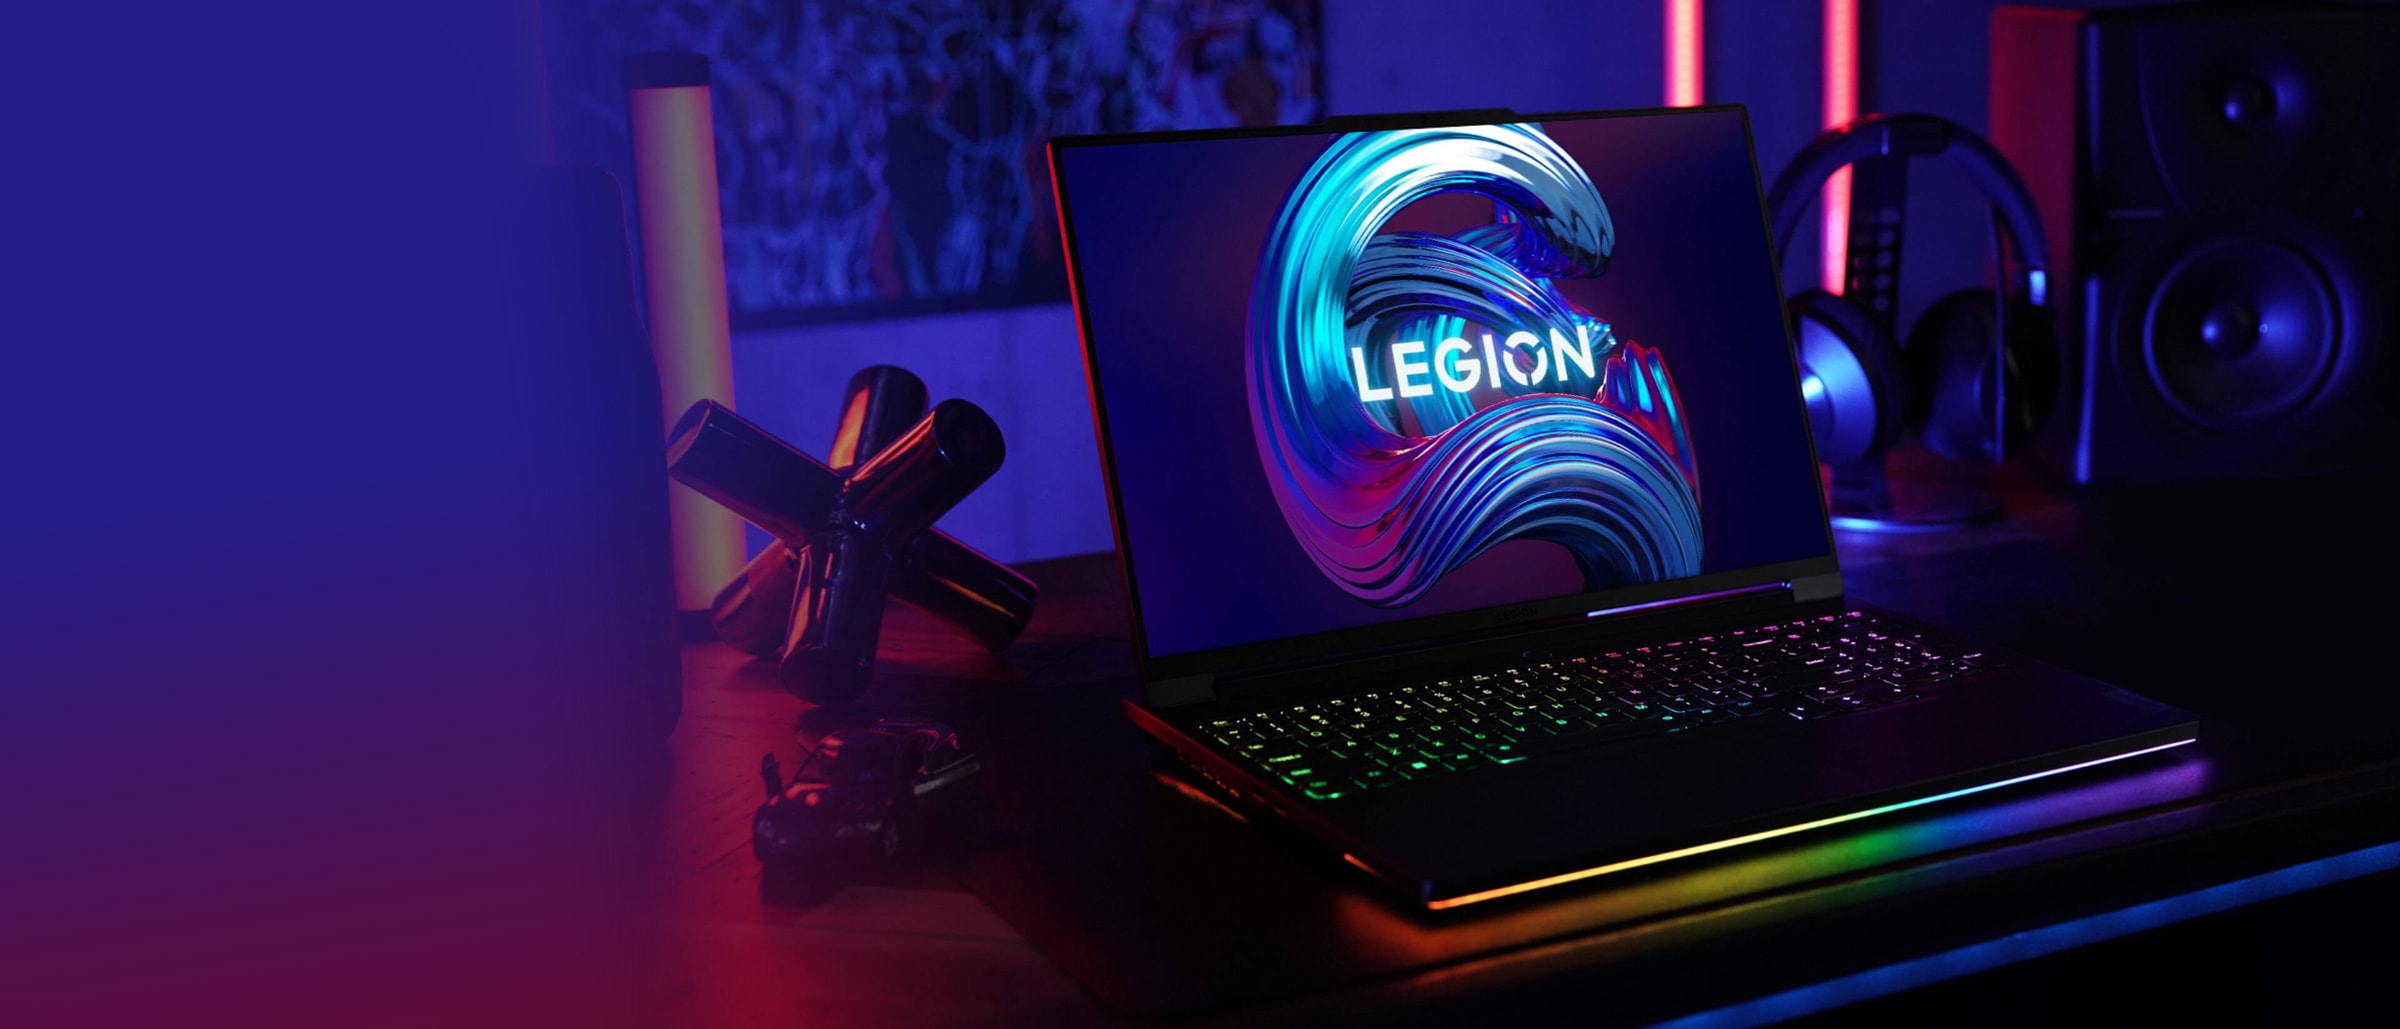 Bærbar Lenovo Legion-PC åpen 90 grader sett forfra, viser tastatur, skjerm, og delvis vinklet for å vise venstre sideporter.